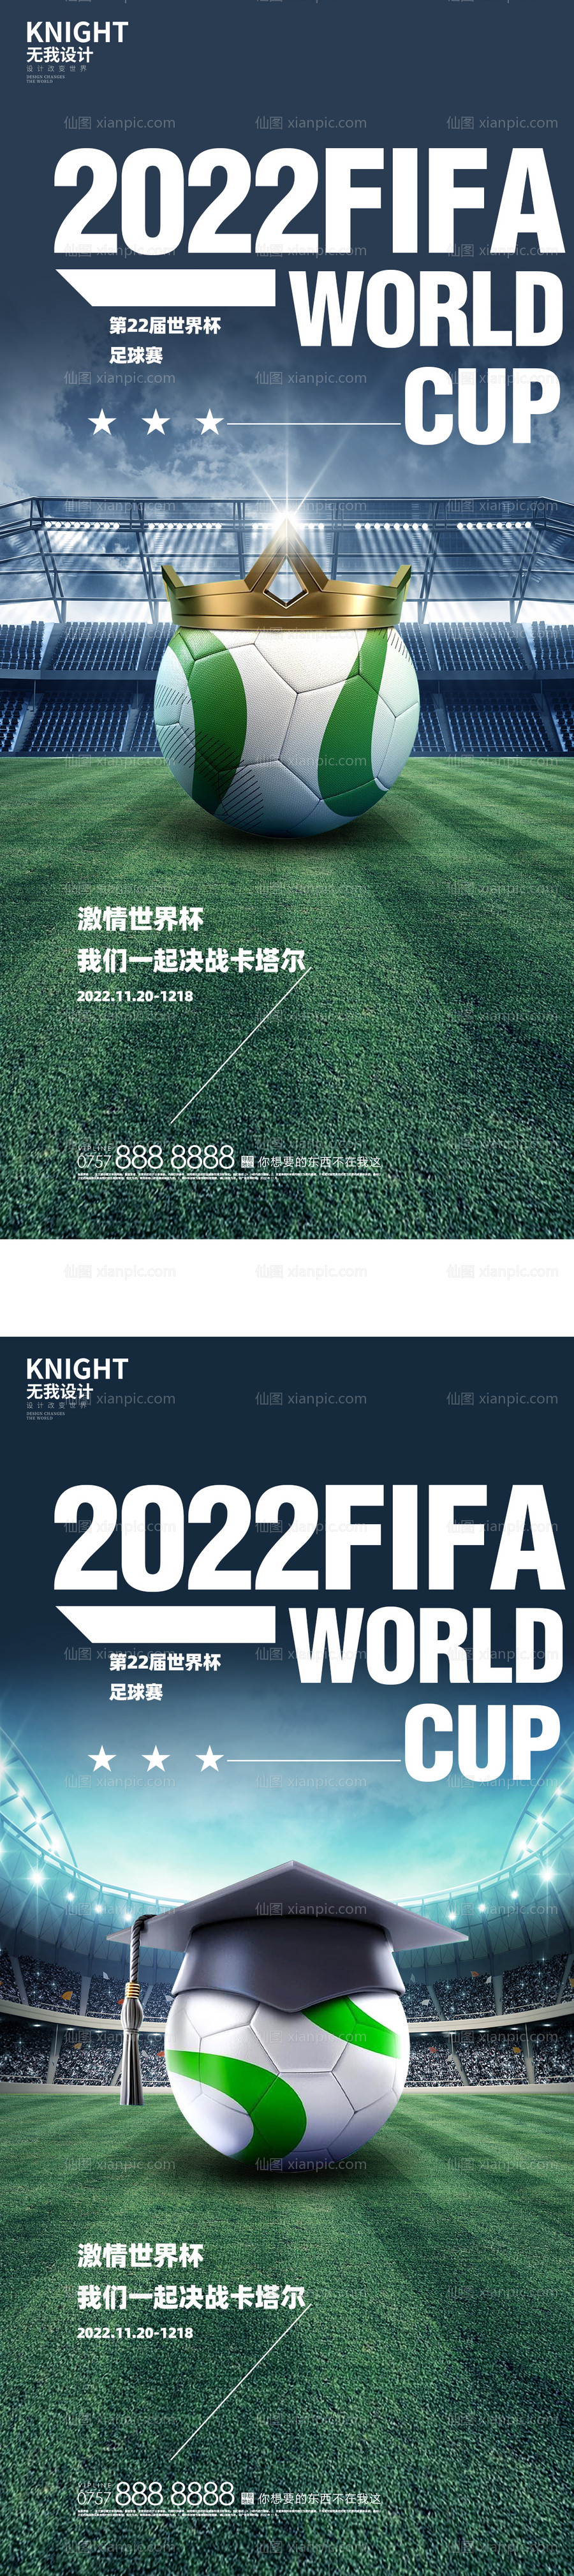 素材乐-世界杯足球系列海报